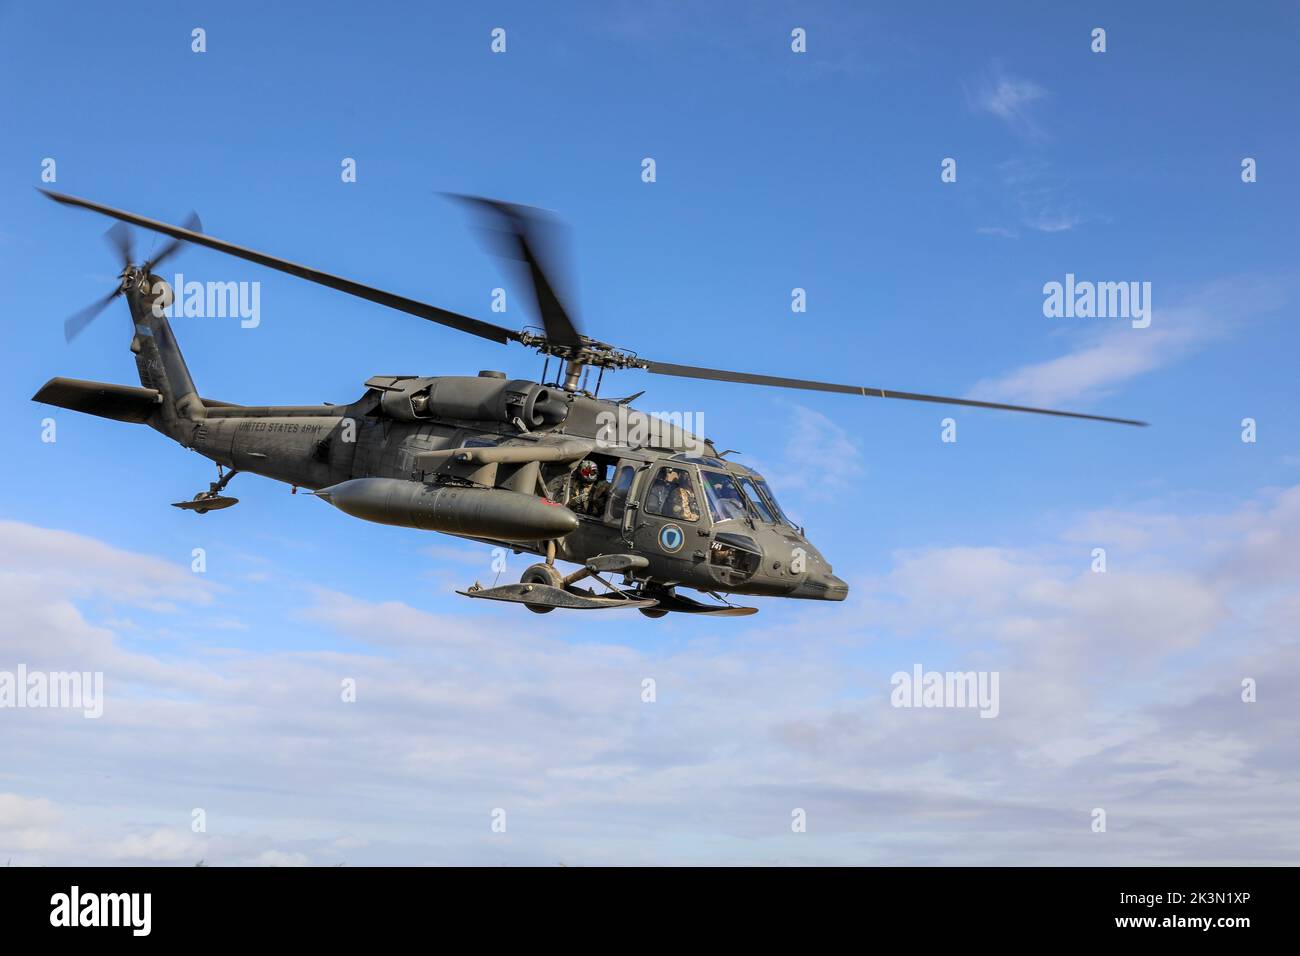 Los aviadores de la Guardia Nacional del Ejército de Alaska asignados a la Fuerza de Tarea Conjunta – Aviación parten de Bethel, Alaska, en un helicóptero UH-60L Black Hawk para recuperar a los miembros de servicio de JTF – Bethel que estaban ayudando a la comunidad de Nightmute, Alaska, con la remoción de escombros de tormentas como parte de la Operación Respuesta Merbok, el 23 de septiembre de 2022. Más de 130 miembros de la milicia organizada de Alaska, que incluye miembros de la Guardia Nacional de Alaska, la Fuerza de Defensa del Estado de Alaska y la milicia naval de Alaska, fueron activados tras una declaración de desastre emitida el 17 de septiembre, después de que los restos del tifón Merbok causaran inundaciones dramáticas Foto de stock